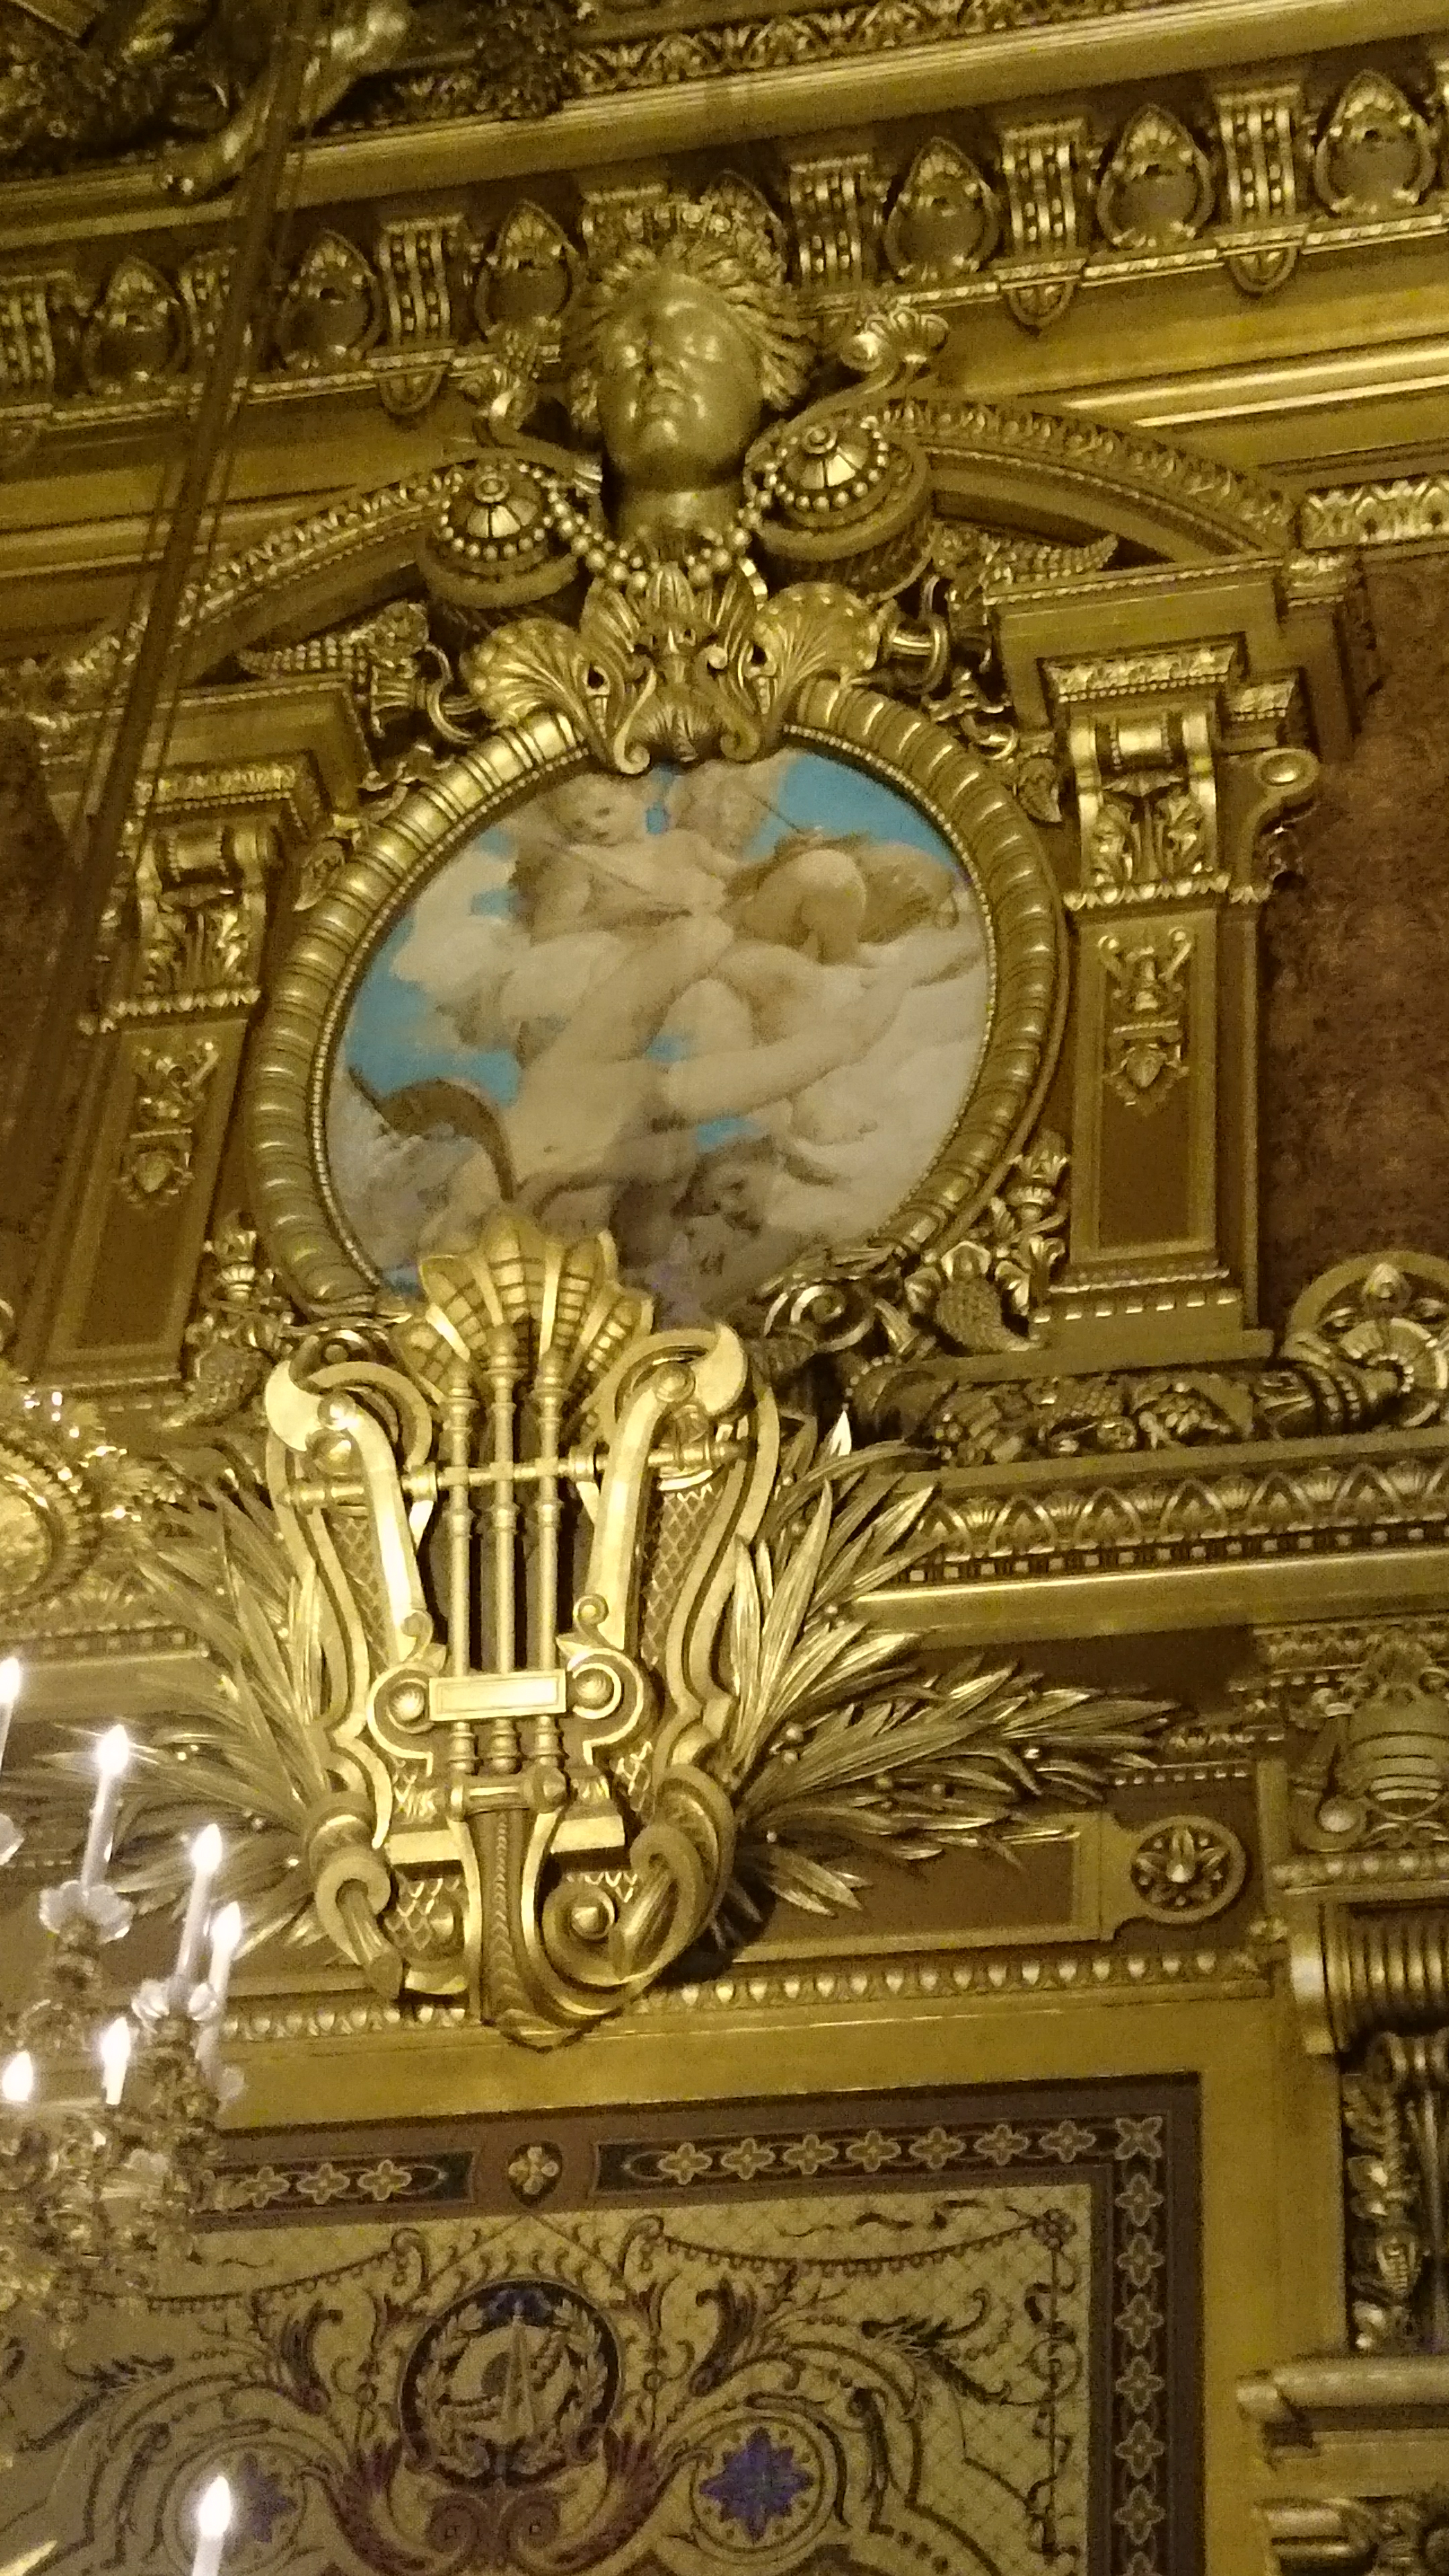 dsc 1062 - Una visita a la Opera de Paris (Palais Garnier)